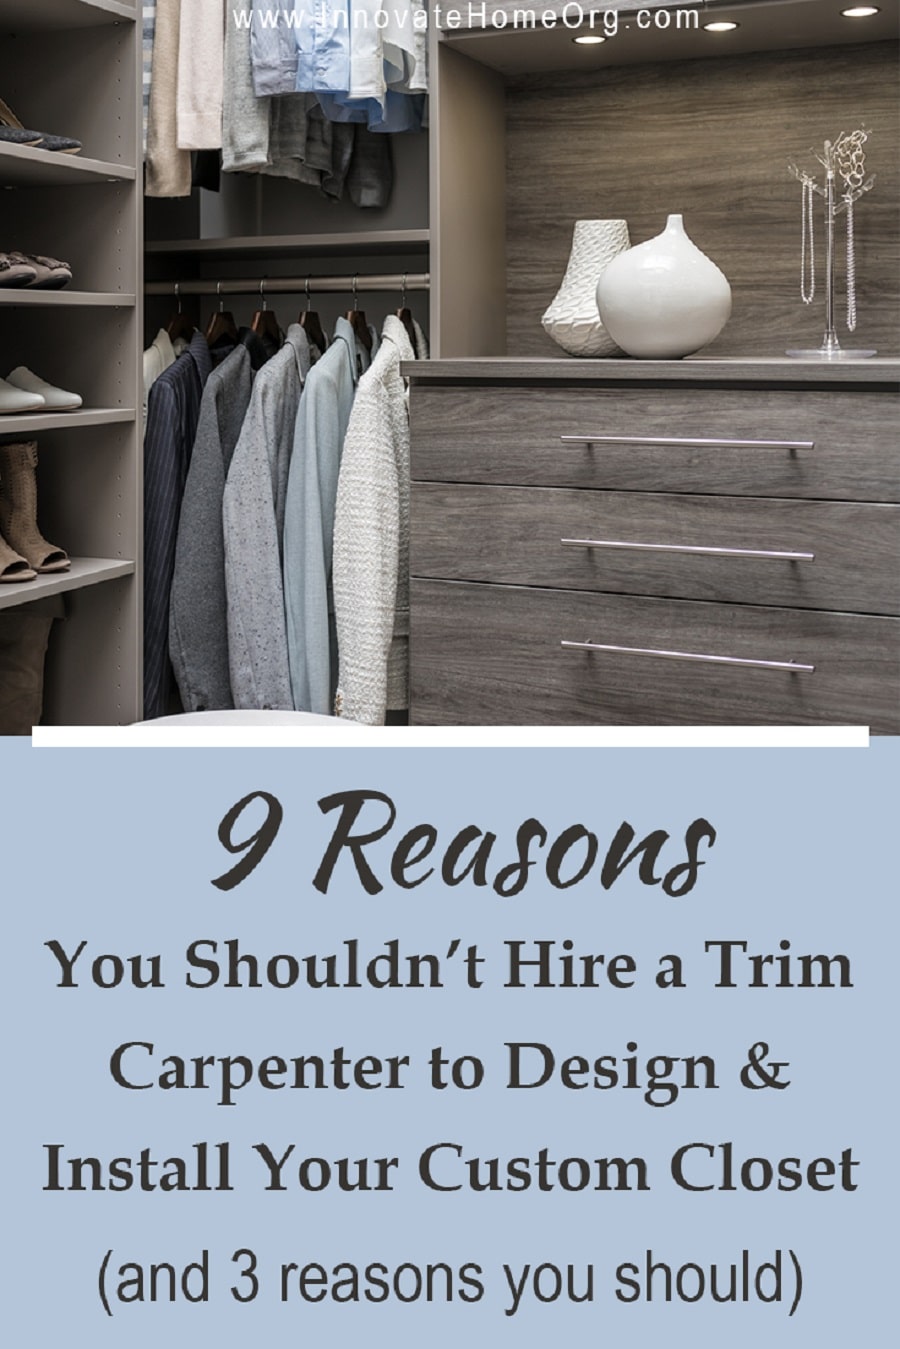 Factor 15 - why hire a closet designer vs. a trim carpenter Innovate Home Org Dublin, Ohio #ClosetDesigner #CustomeClosetDesigner #CustomClosetLayout